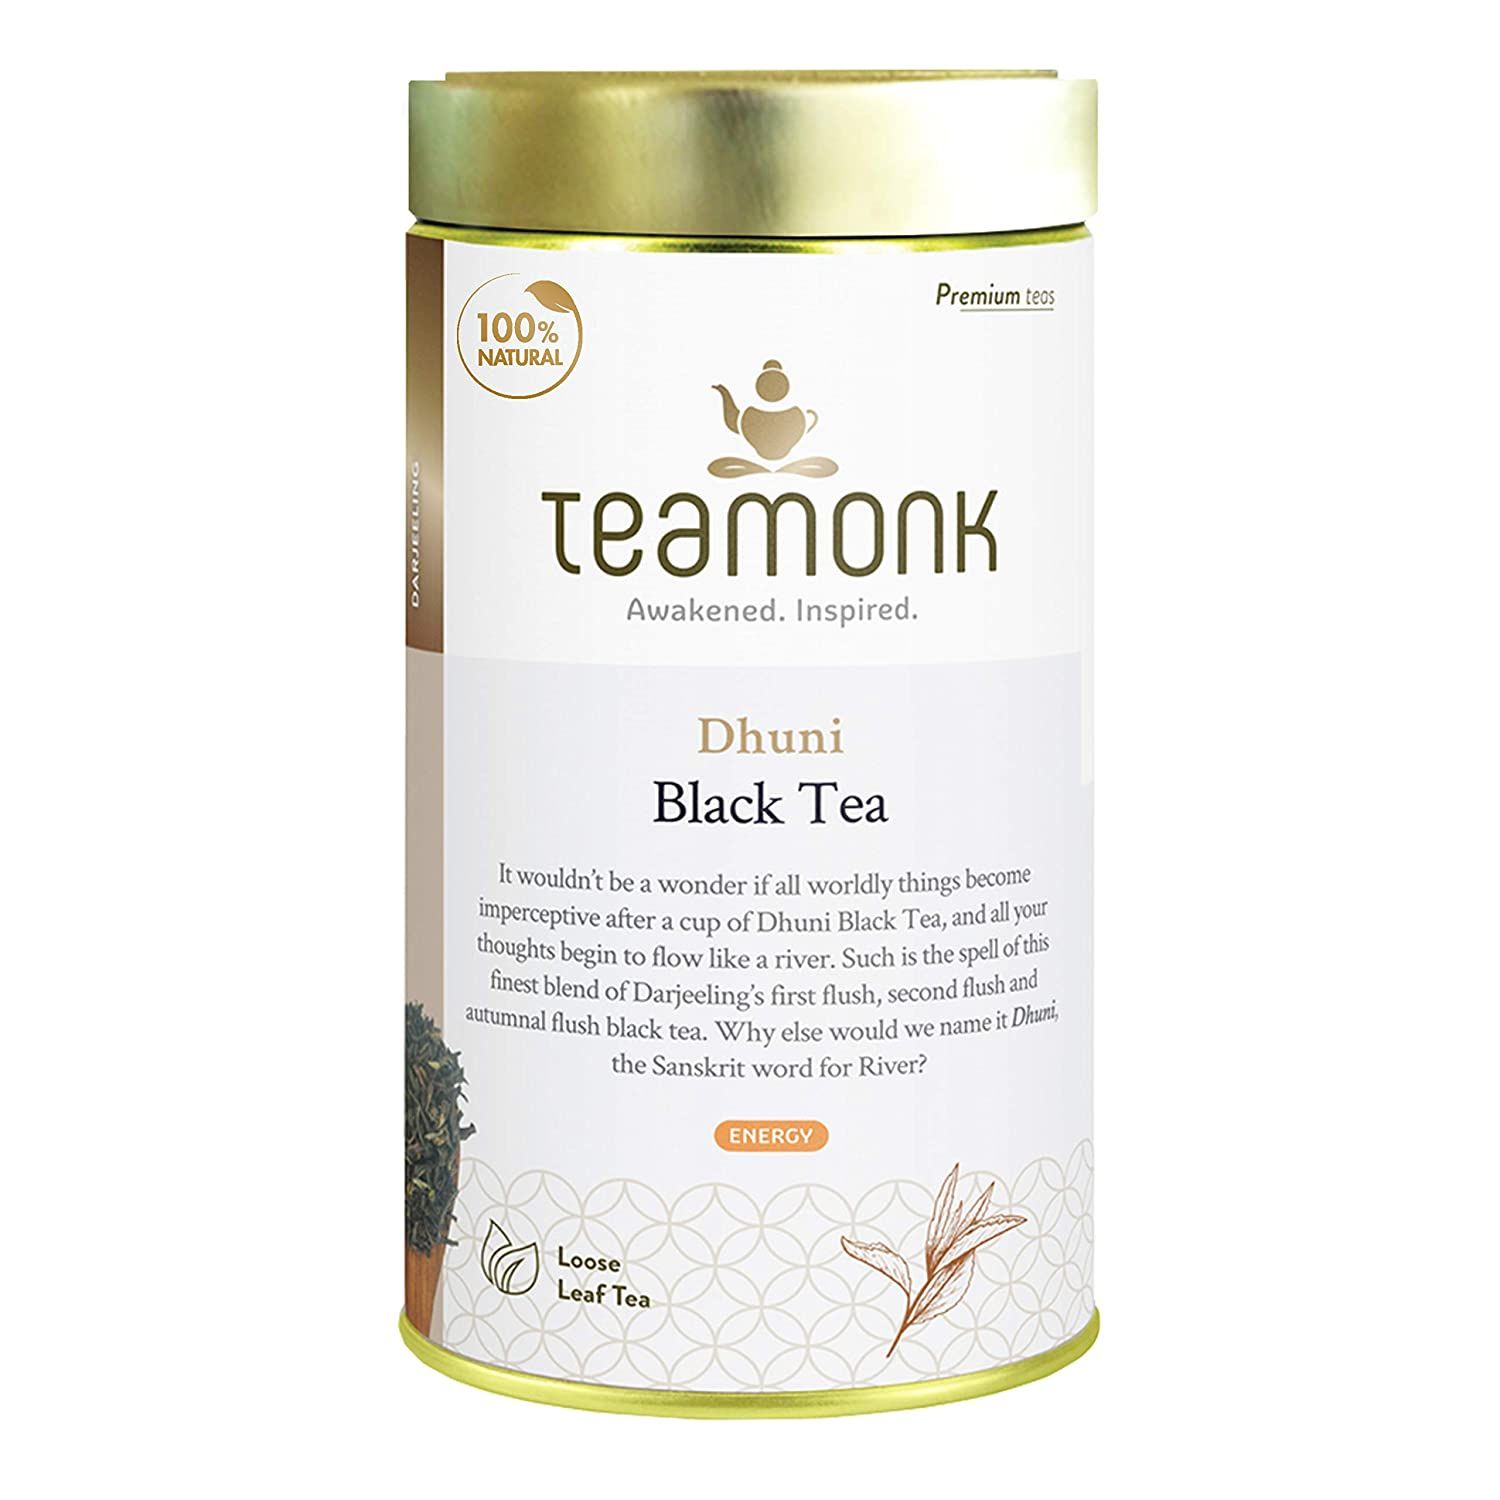 Teamonk Black Tea Image